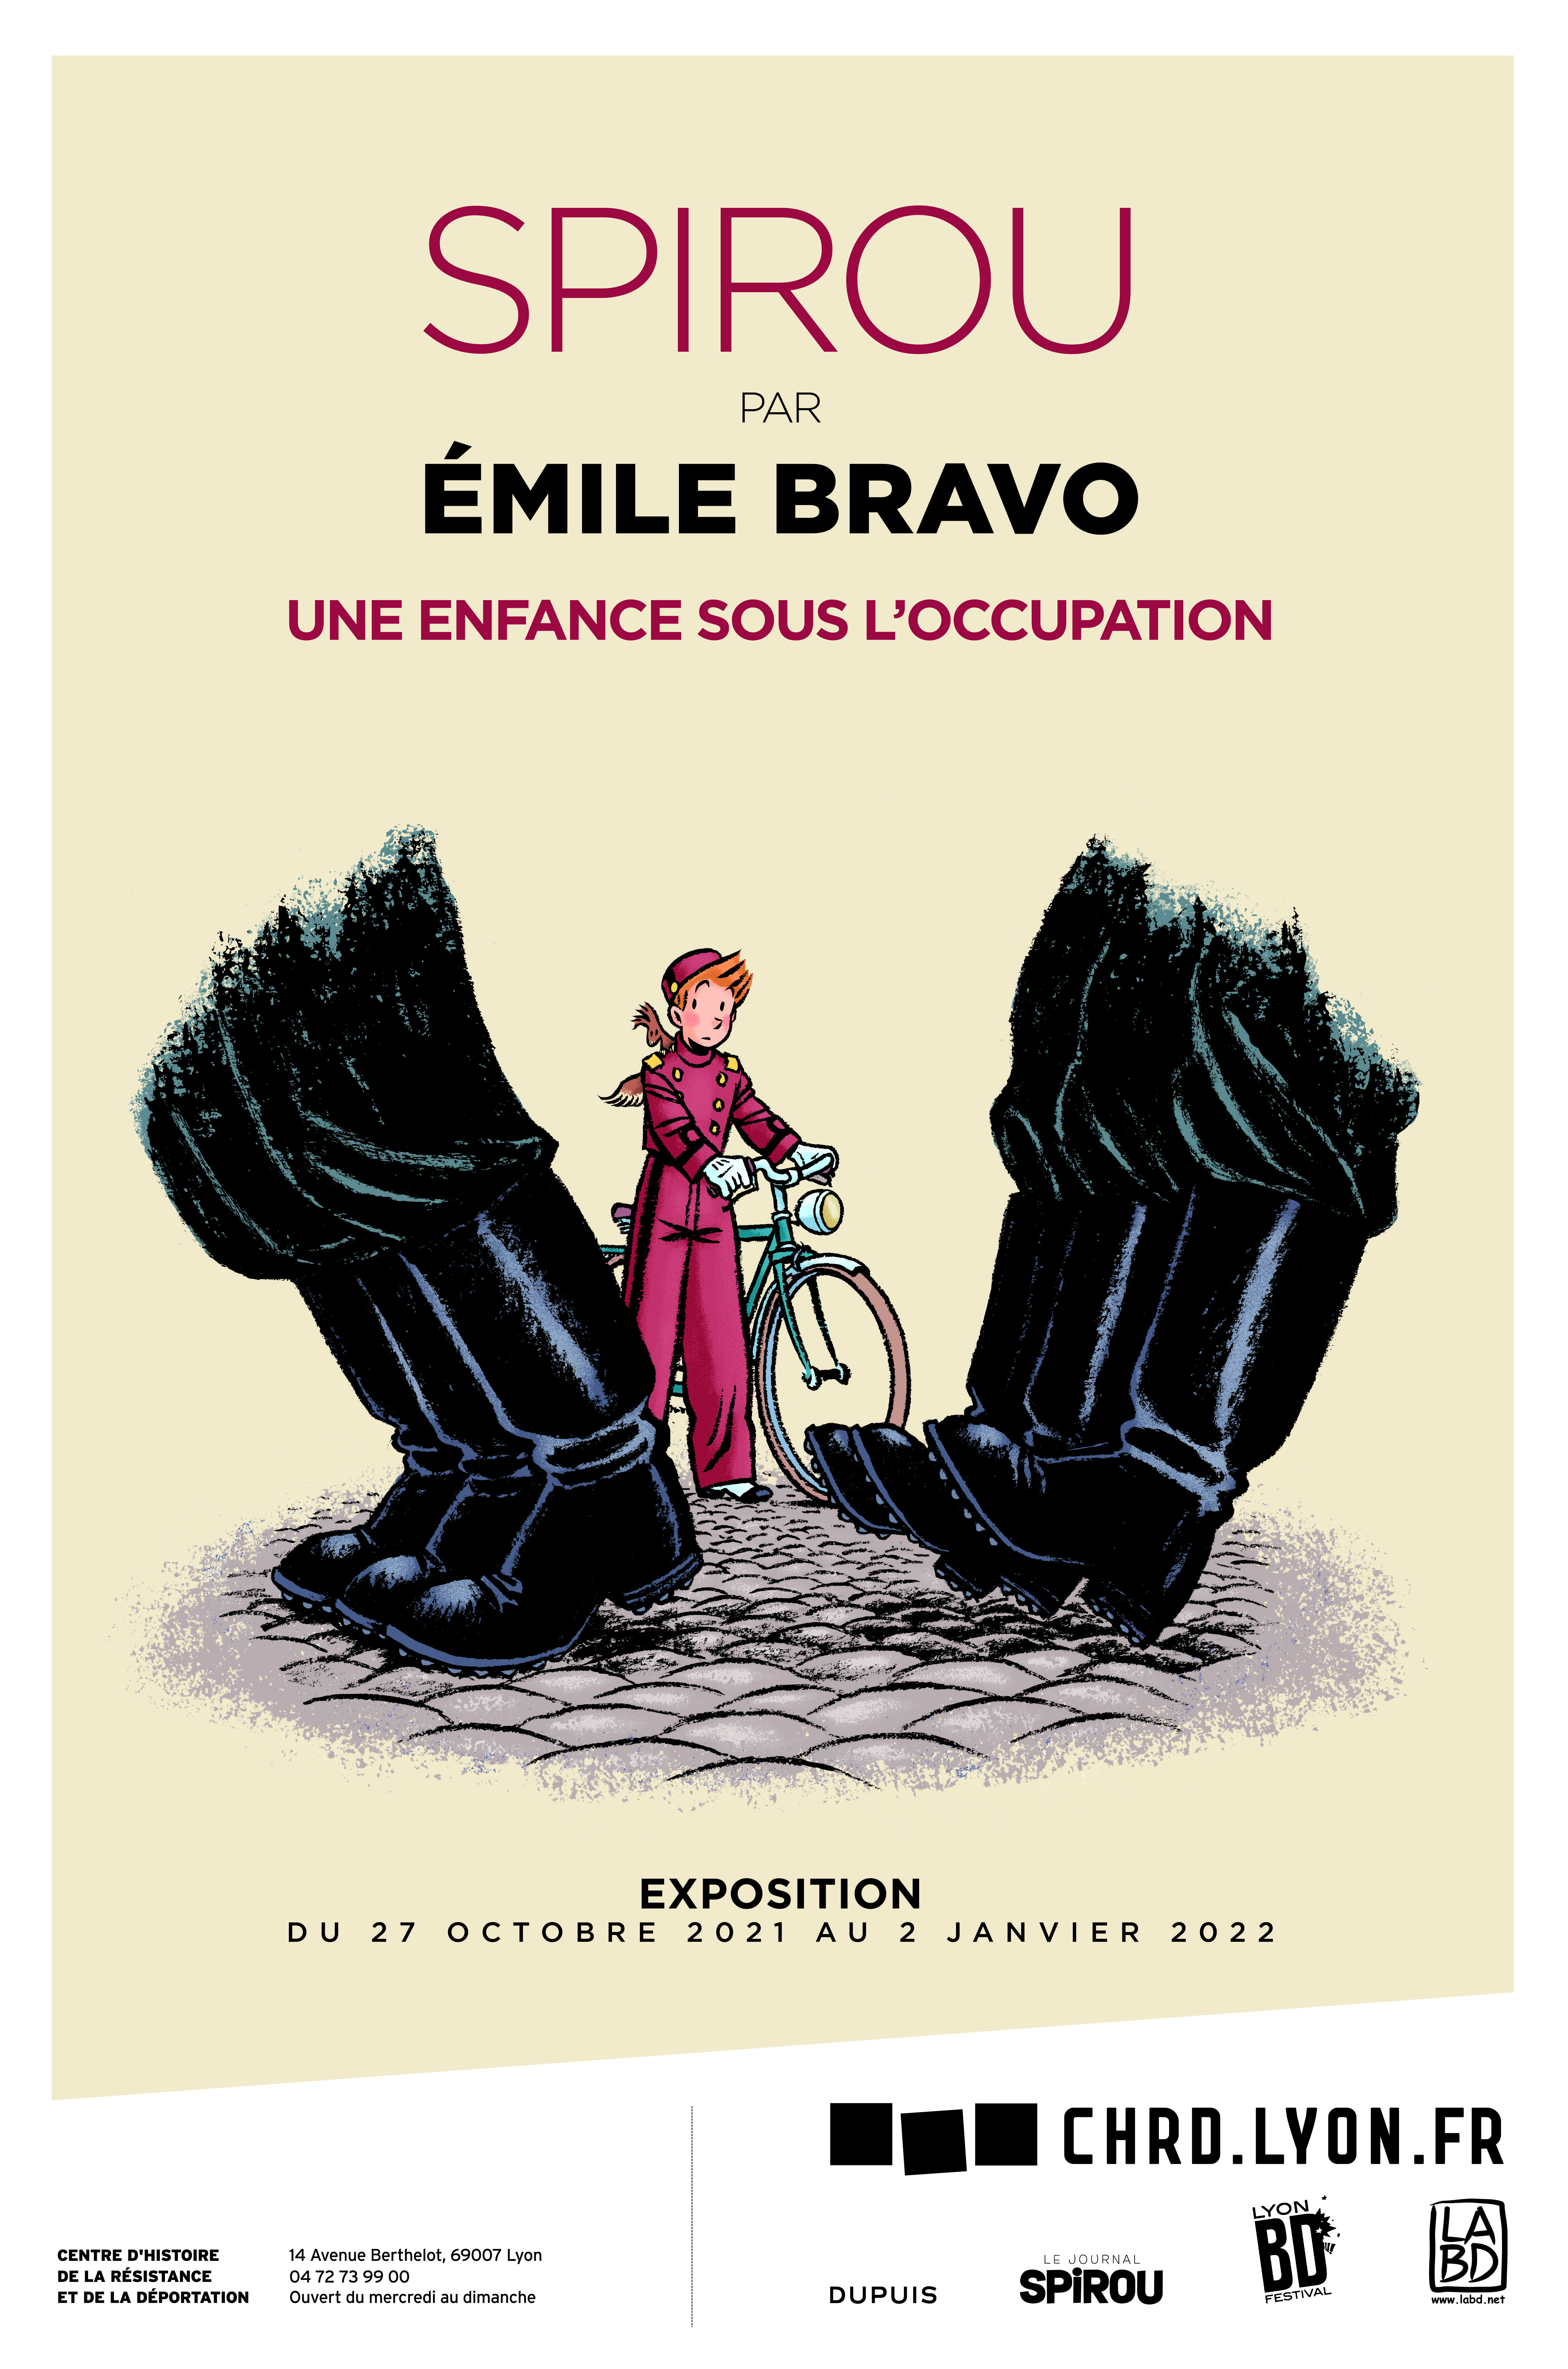 À Lyon, du 27 octobre au 2 janvier 2021, l'Histoire nous est racontée par Spirou et Emile Bravo